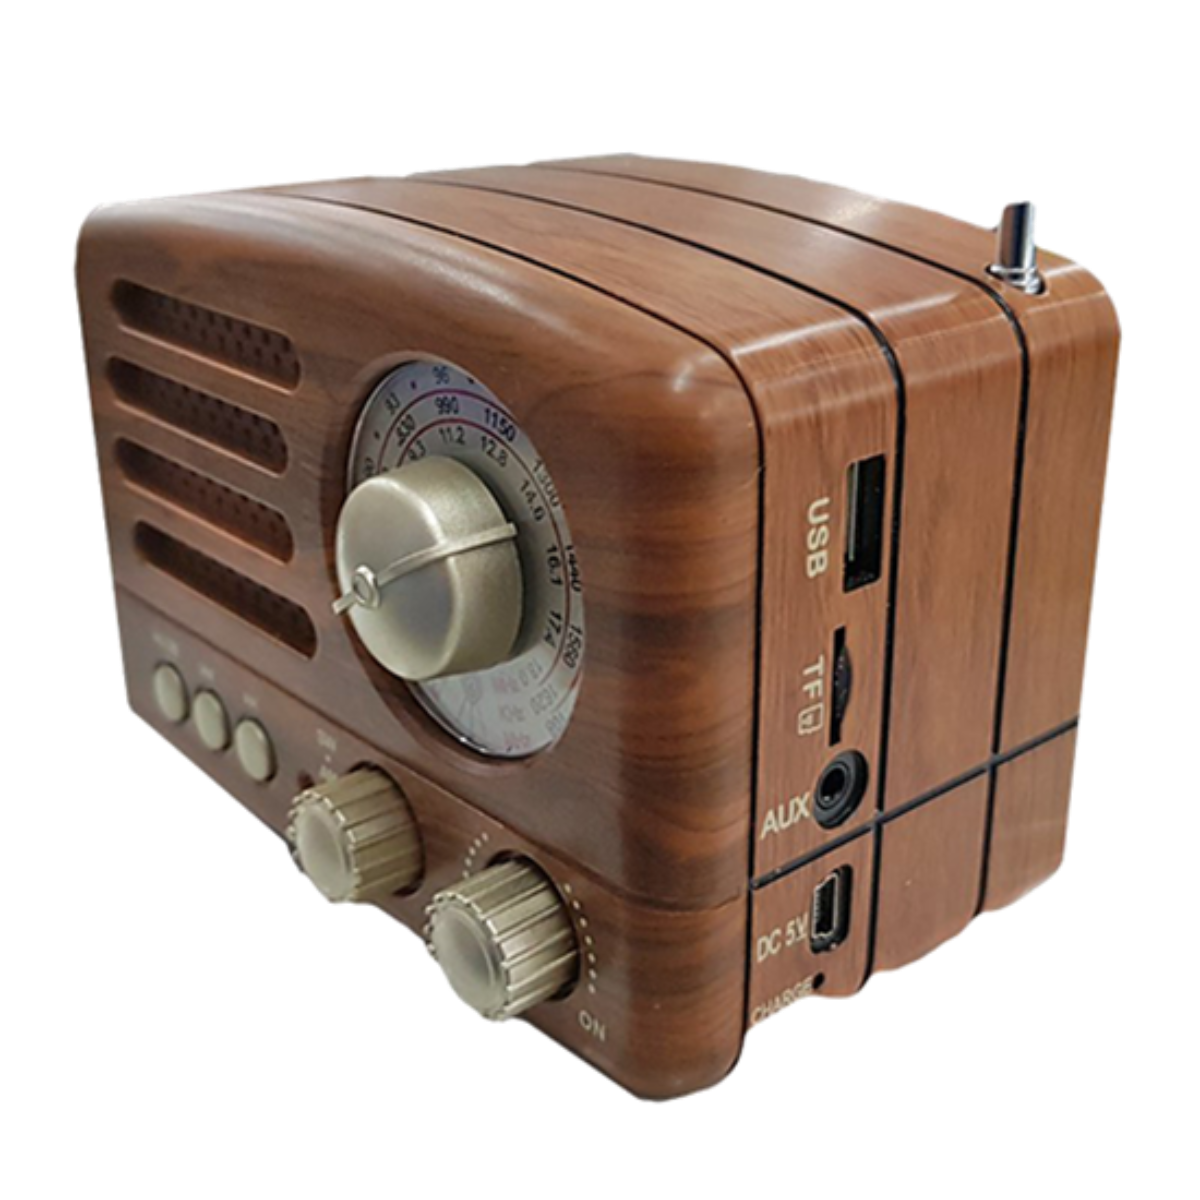 M2-TEC Radio Bluetooth, SW, FM, Braun AM, FM, AM, Küchenradio